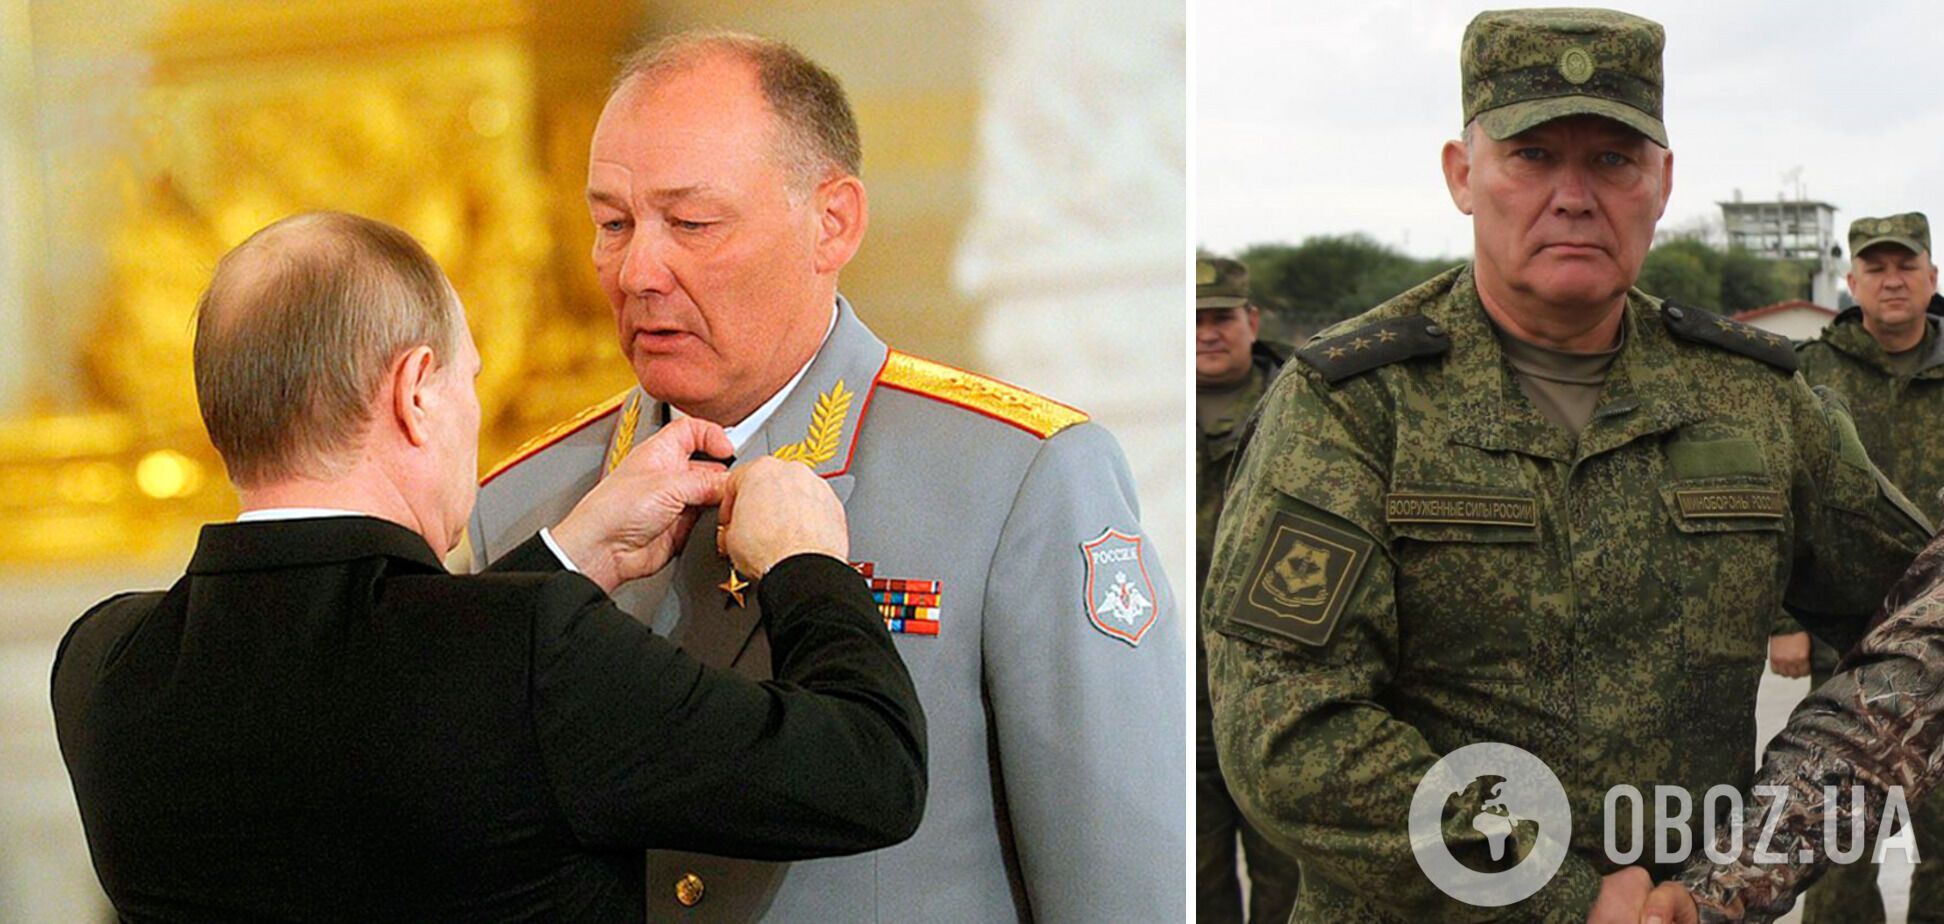 Командующий Южного военного округа Александр Дворников докладывал в Москву, что армия Путина укомплектована "нормально"